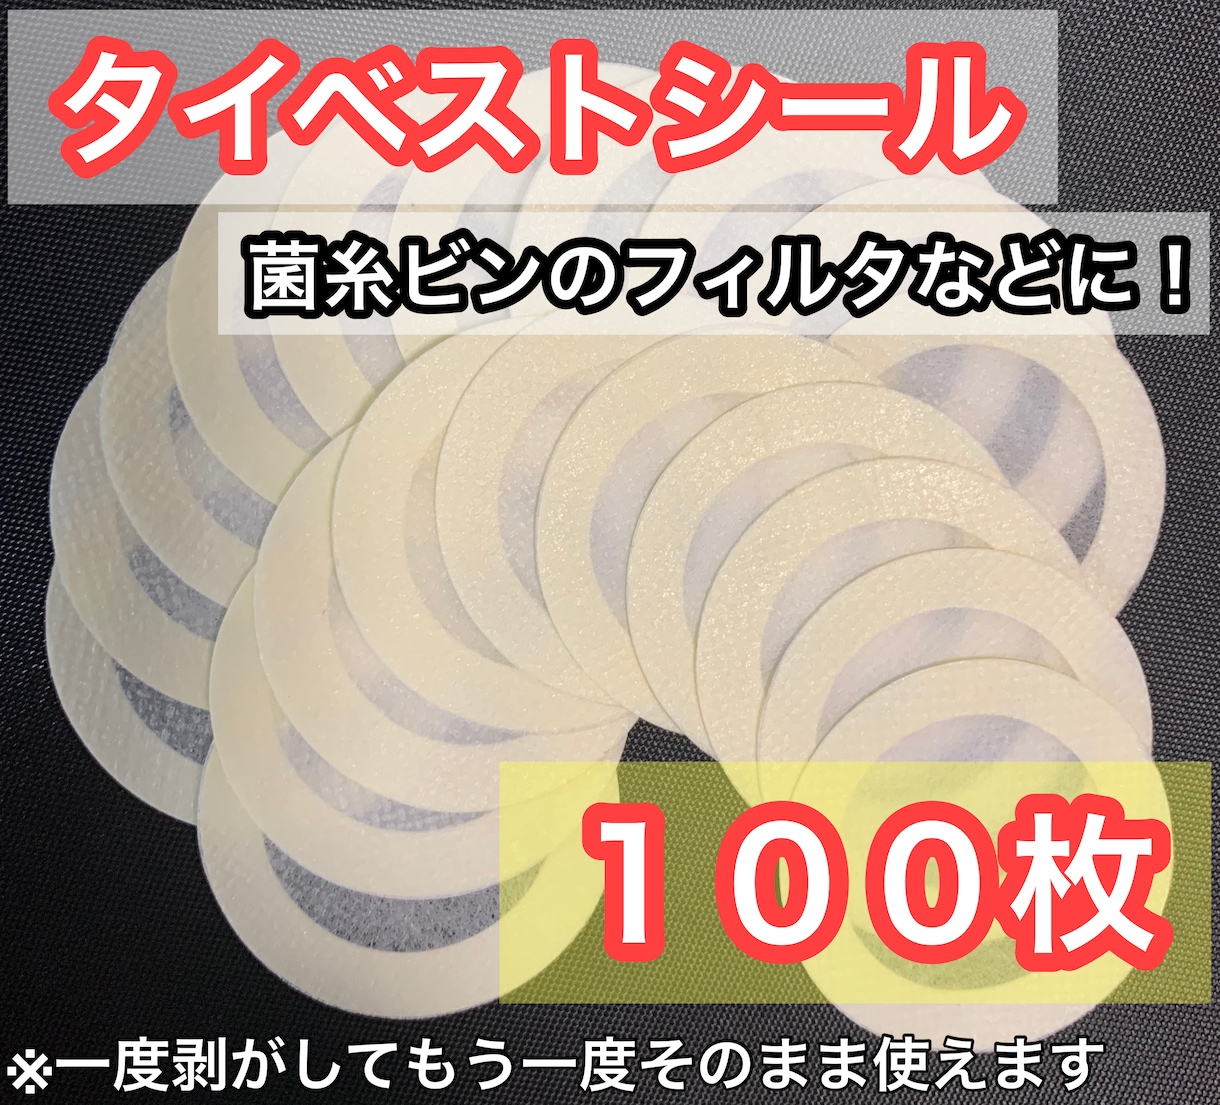 菌糸ビン用 不織布フィルター タイベストシール 100枚 - 飼育用品